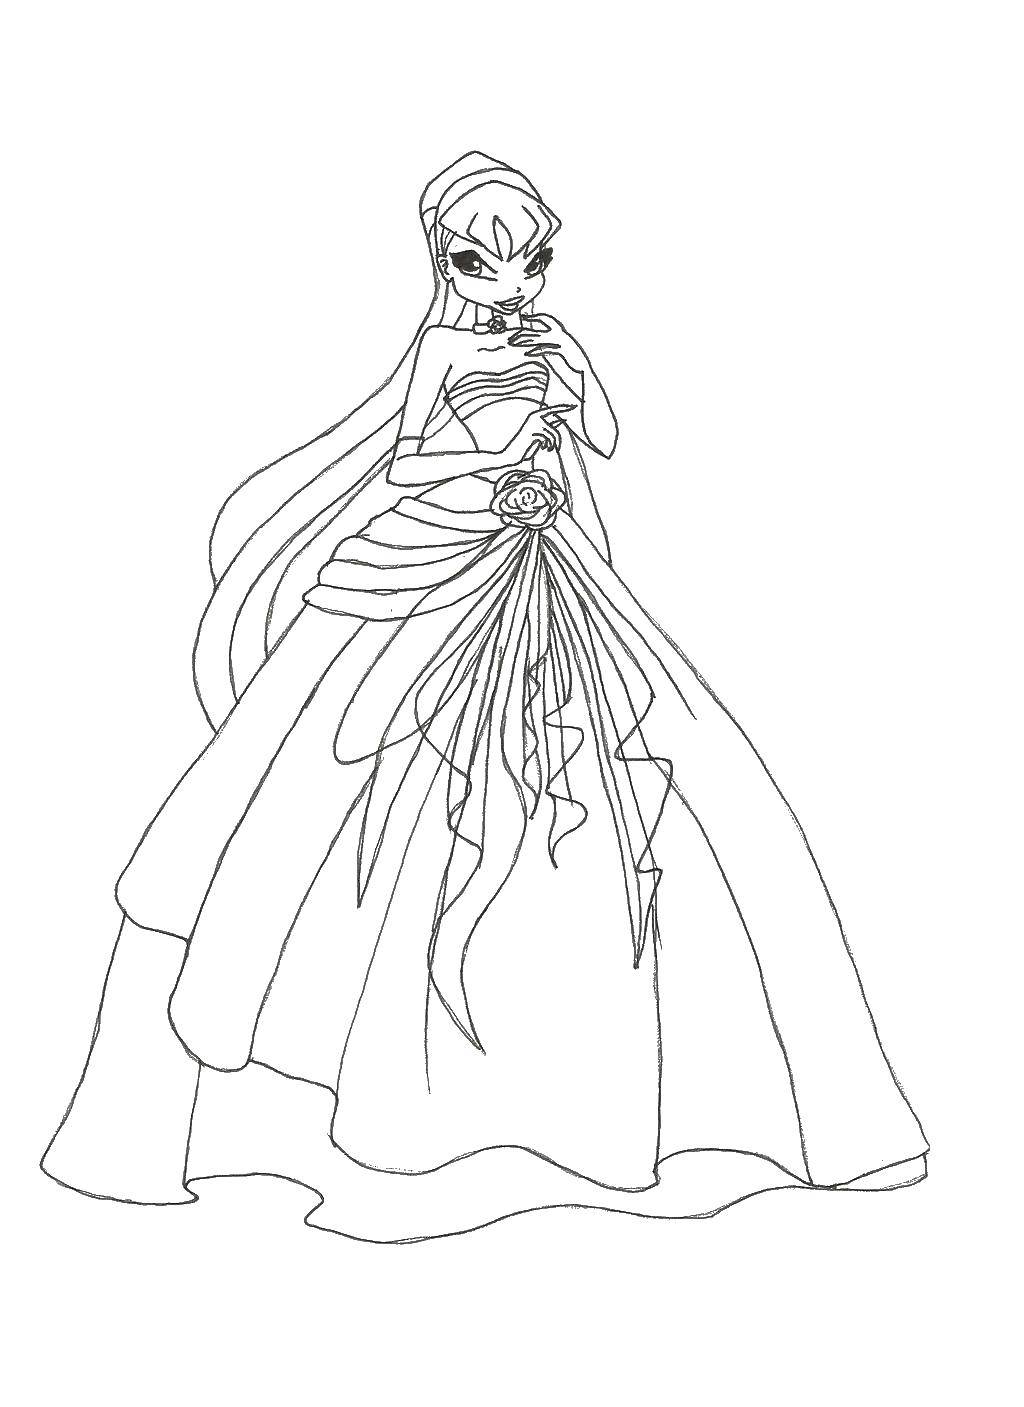 Название: Раскраска Стелла в бальном платье. Категория: Винкс. Теги: Персонаж из мультфильма, Winx.